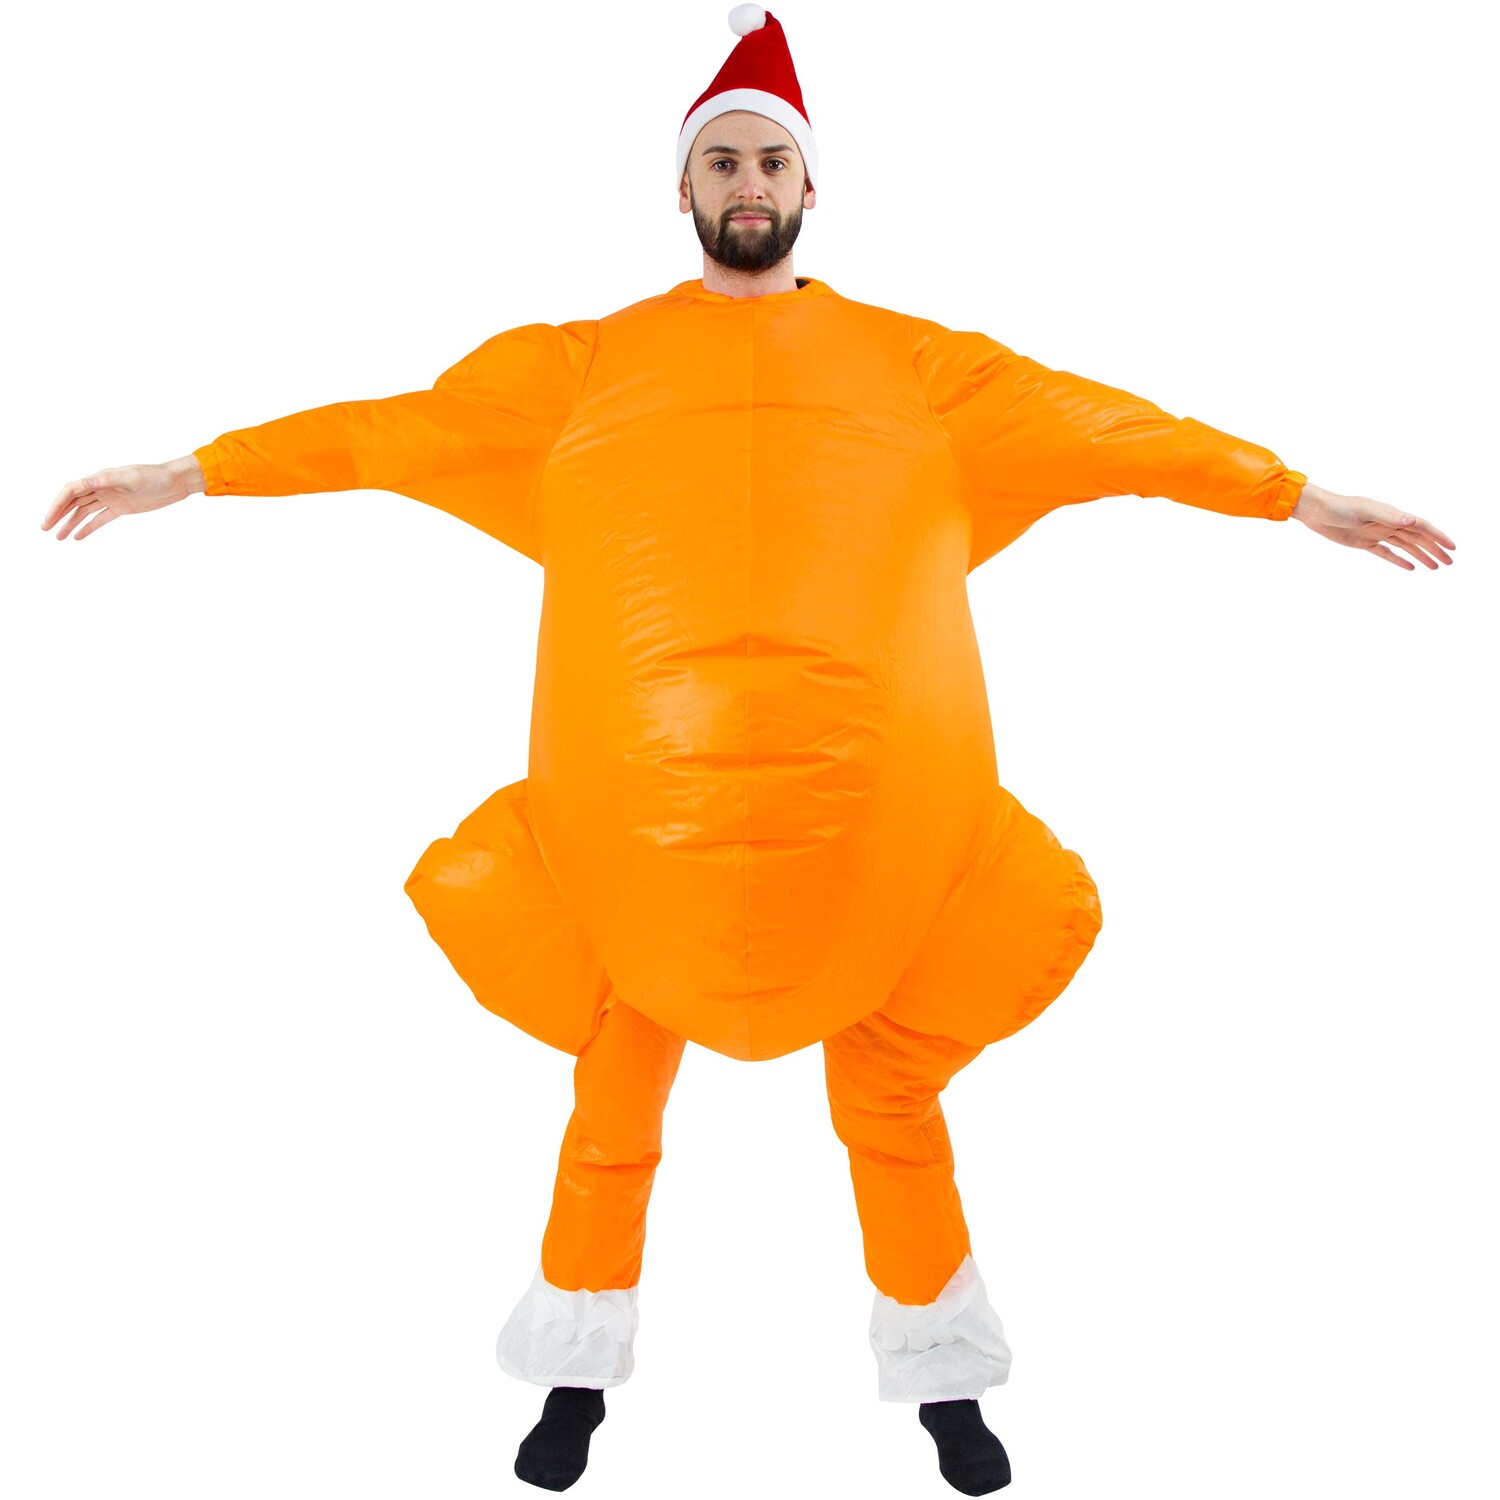 Roasted Turkey Inflatable Costume Image 1